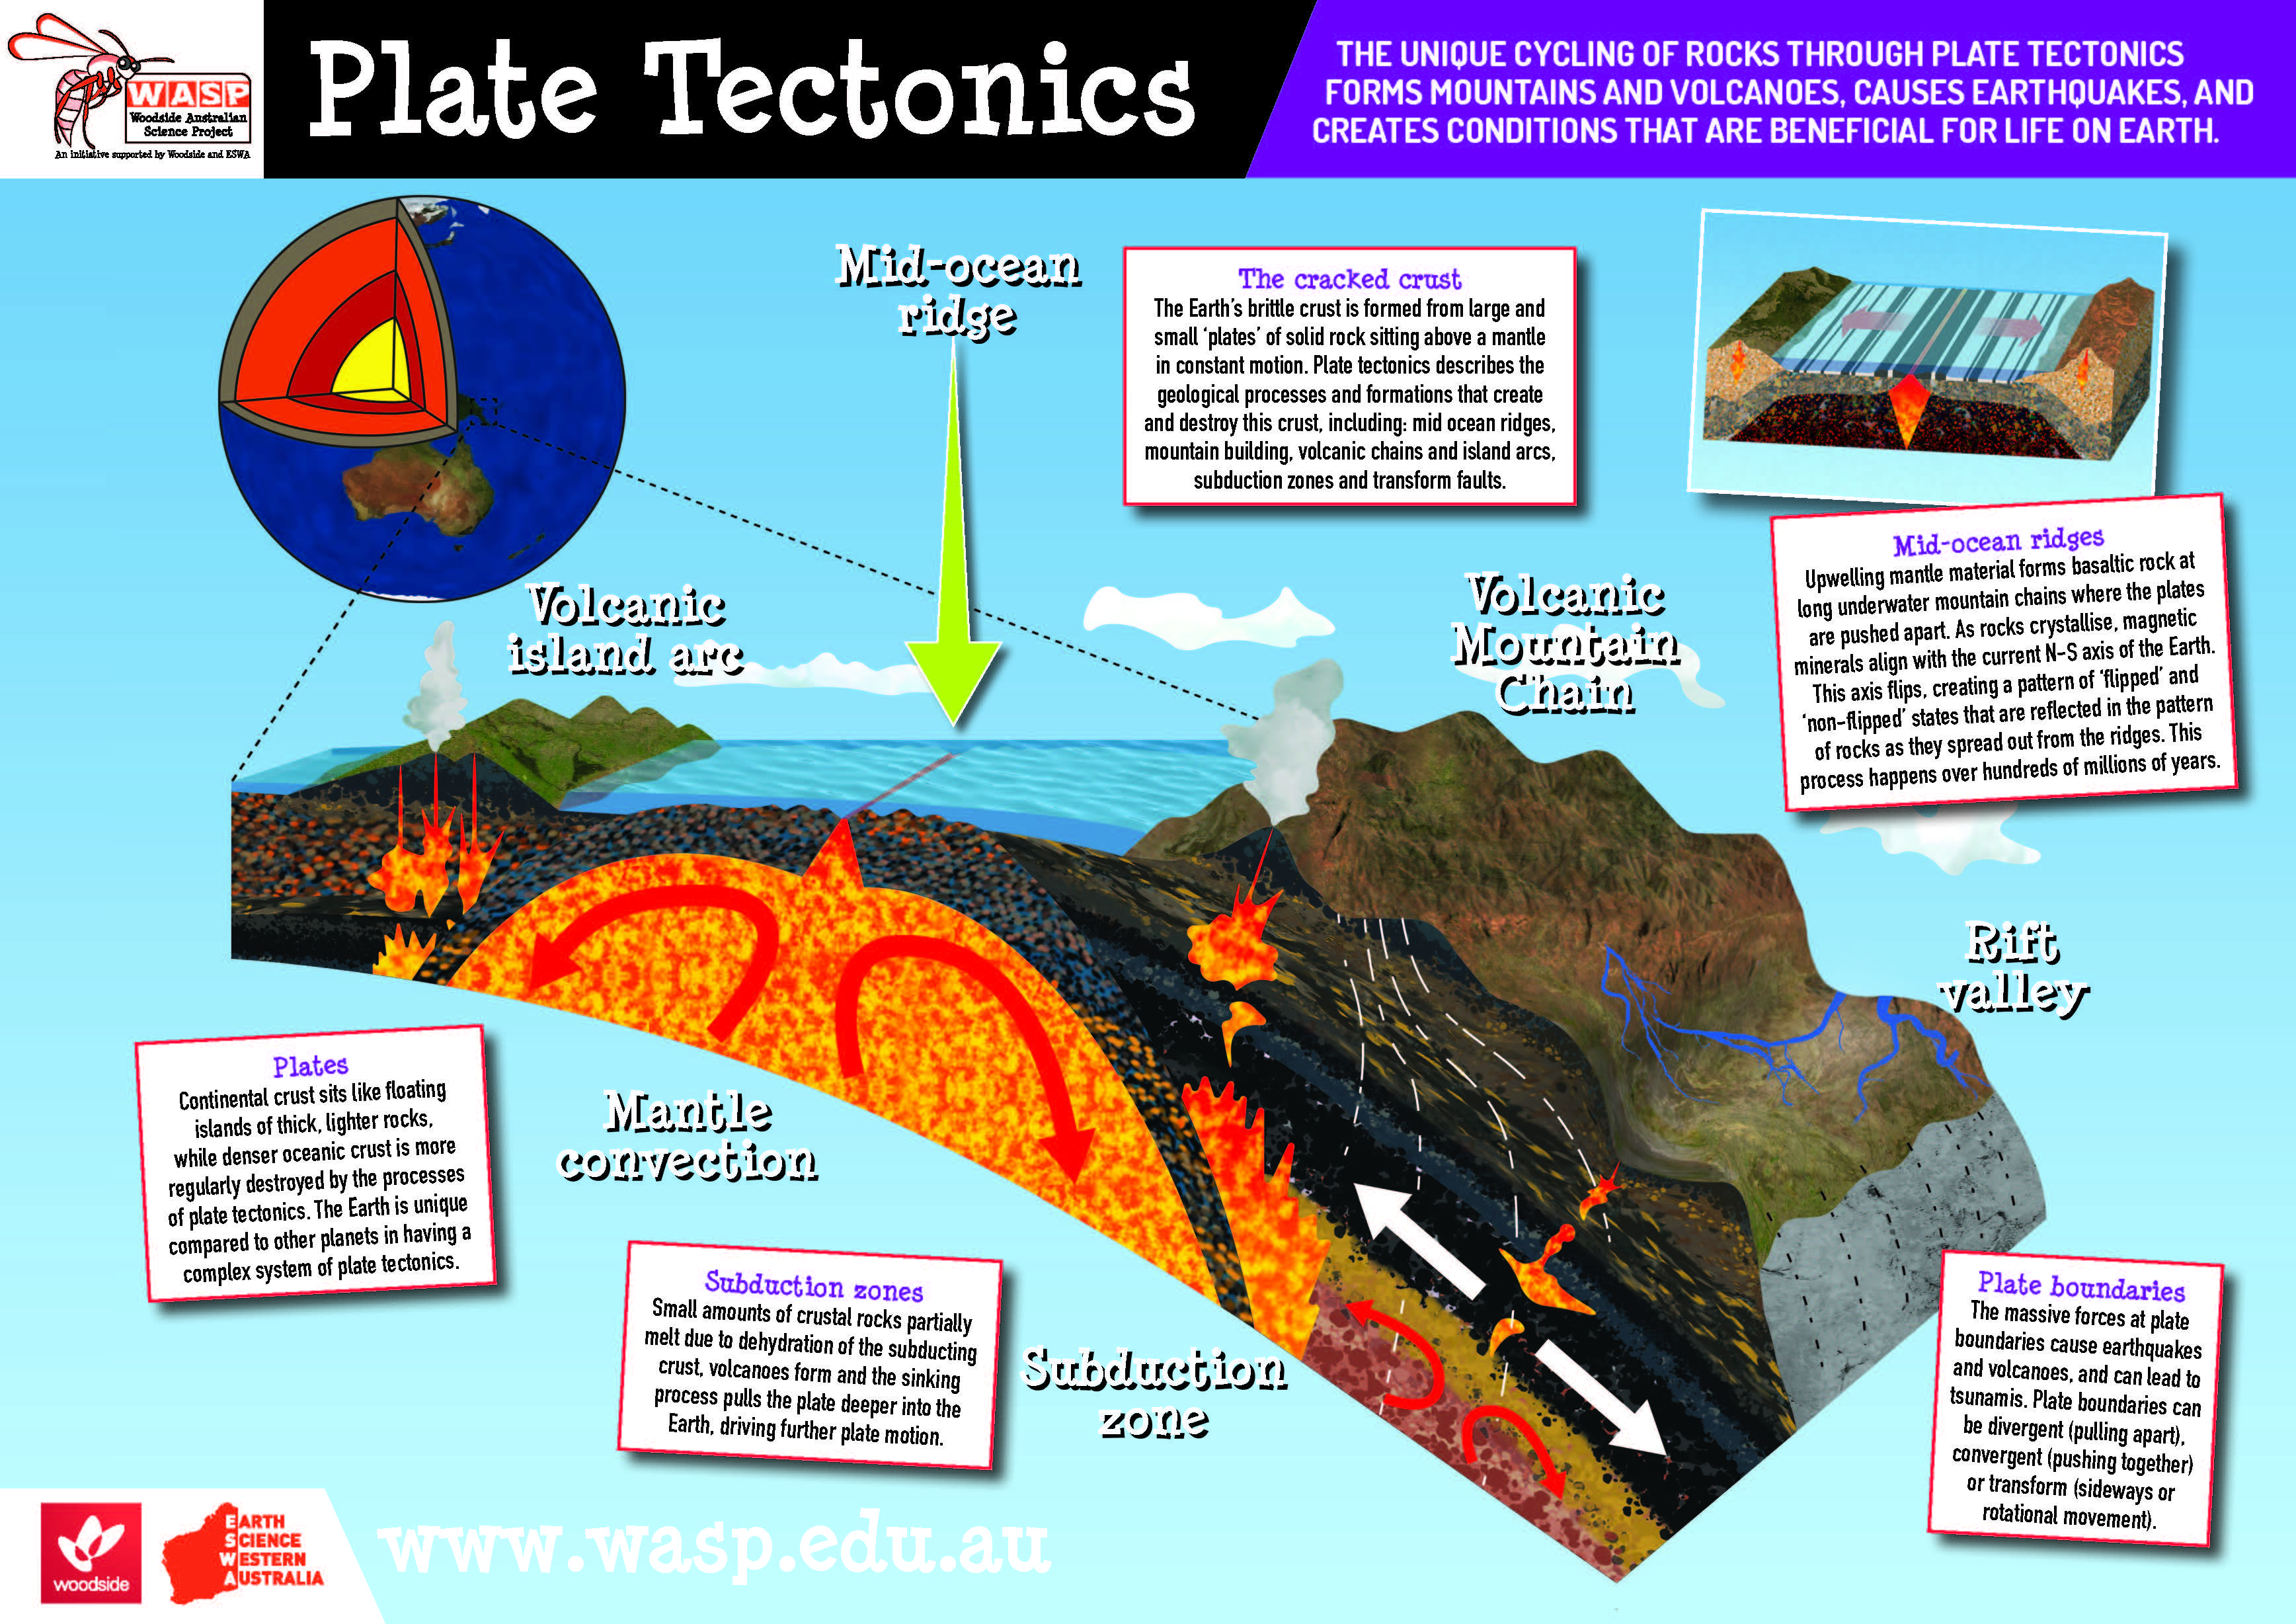 What happens at plate boundaries?